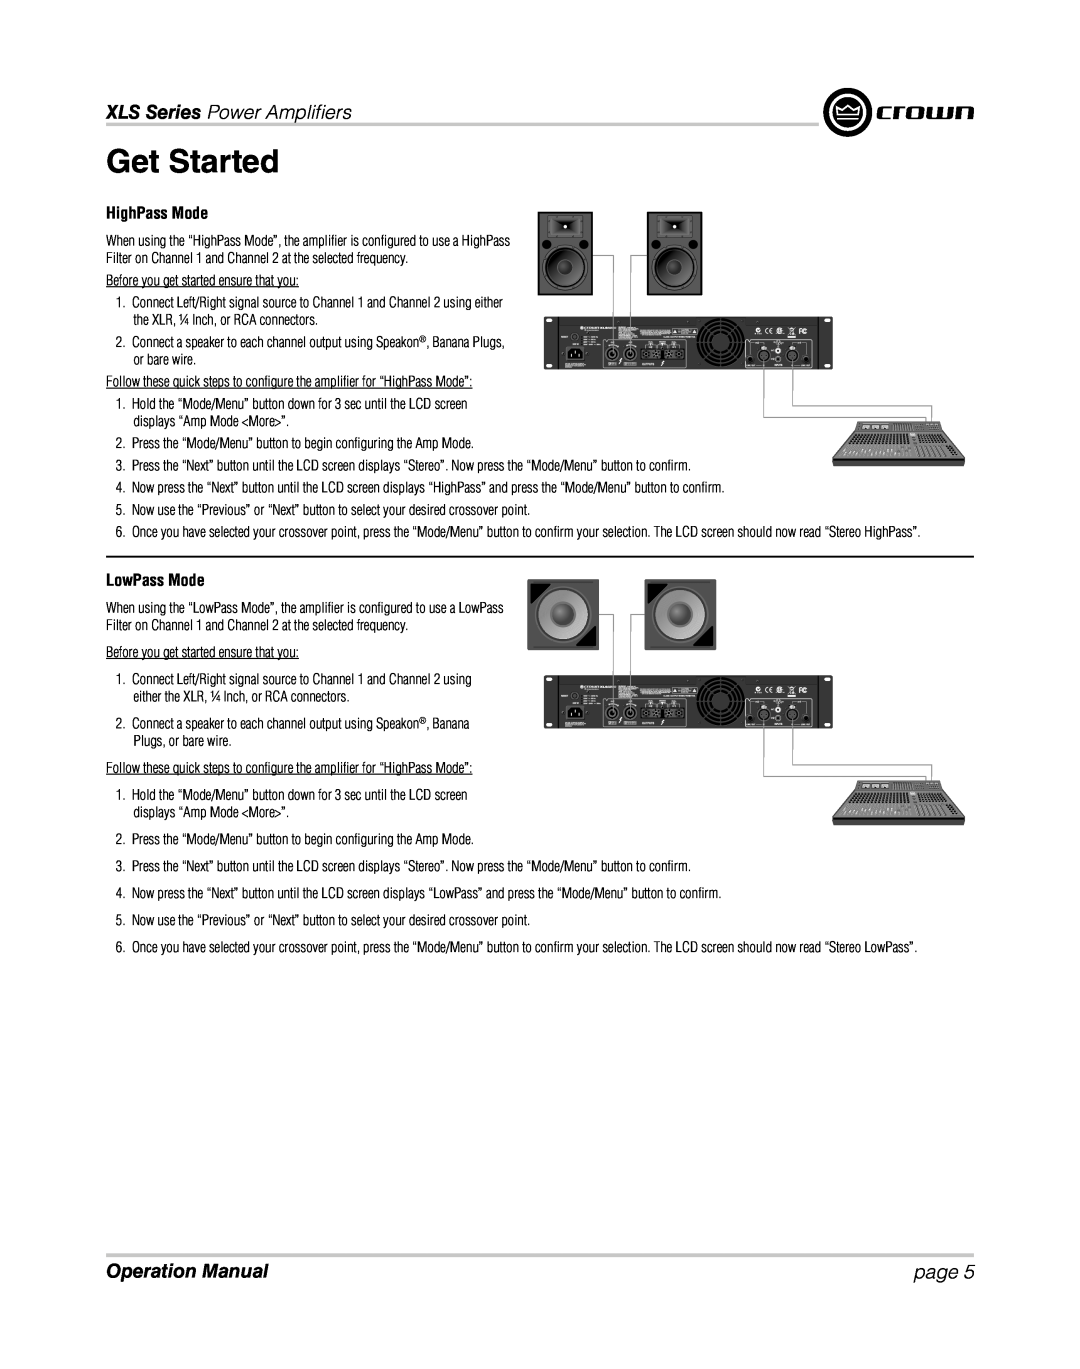 Crown XLS 1000 operation manual HighPass Mode, LowPass Mode, Get Started, XLS Series Power Ampliﬁ ers, page 